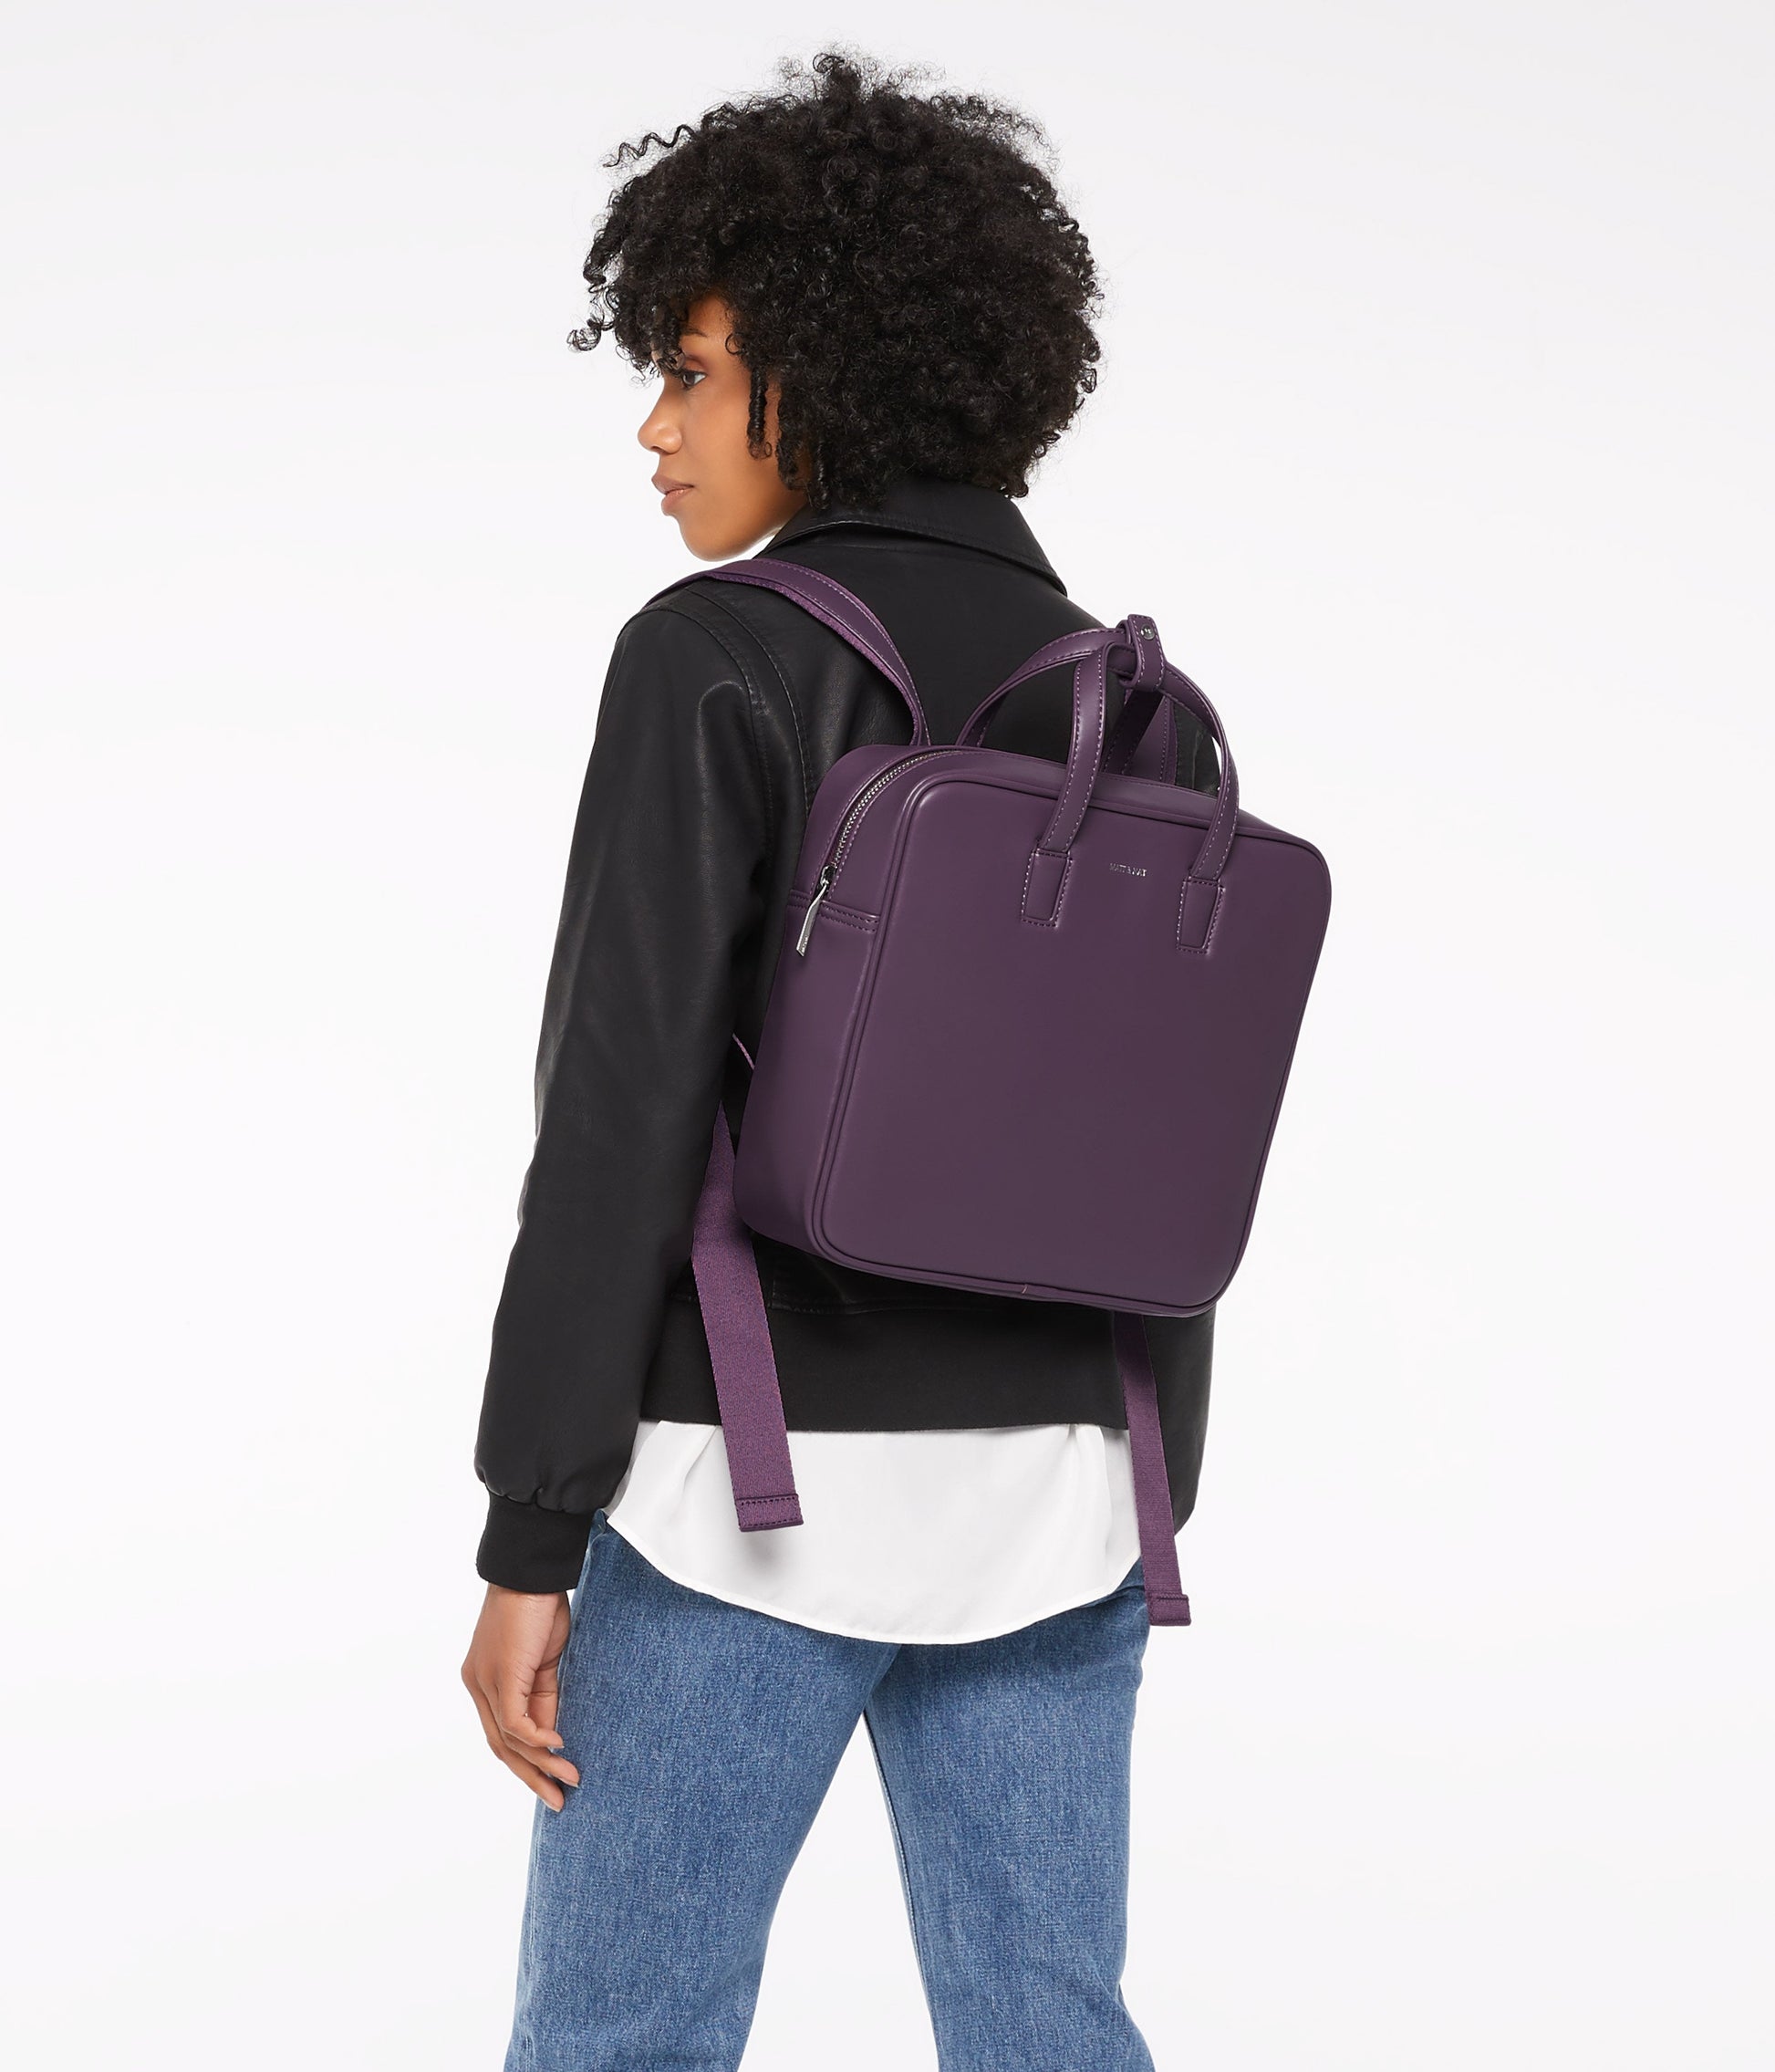 SUDA Vegan Backpack - Loom | Color: Tan - variant::cafe